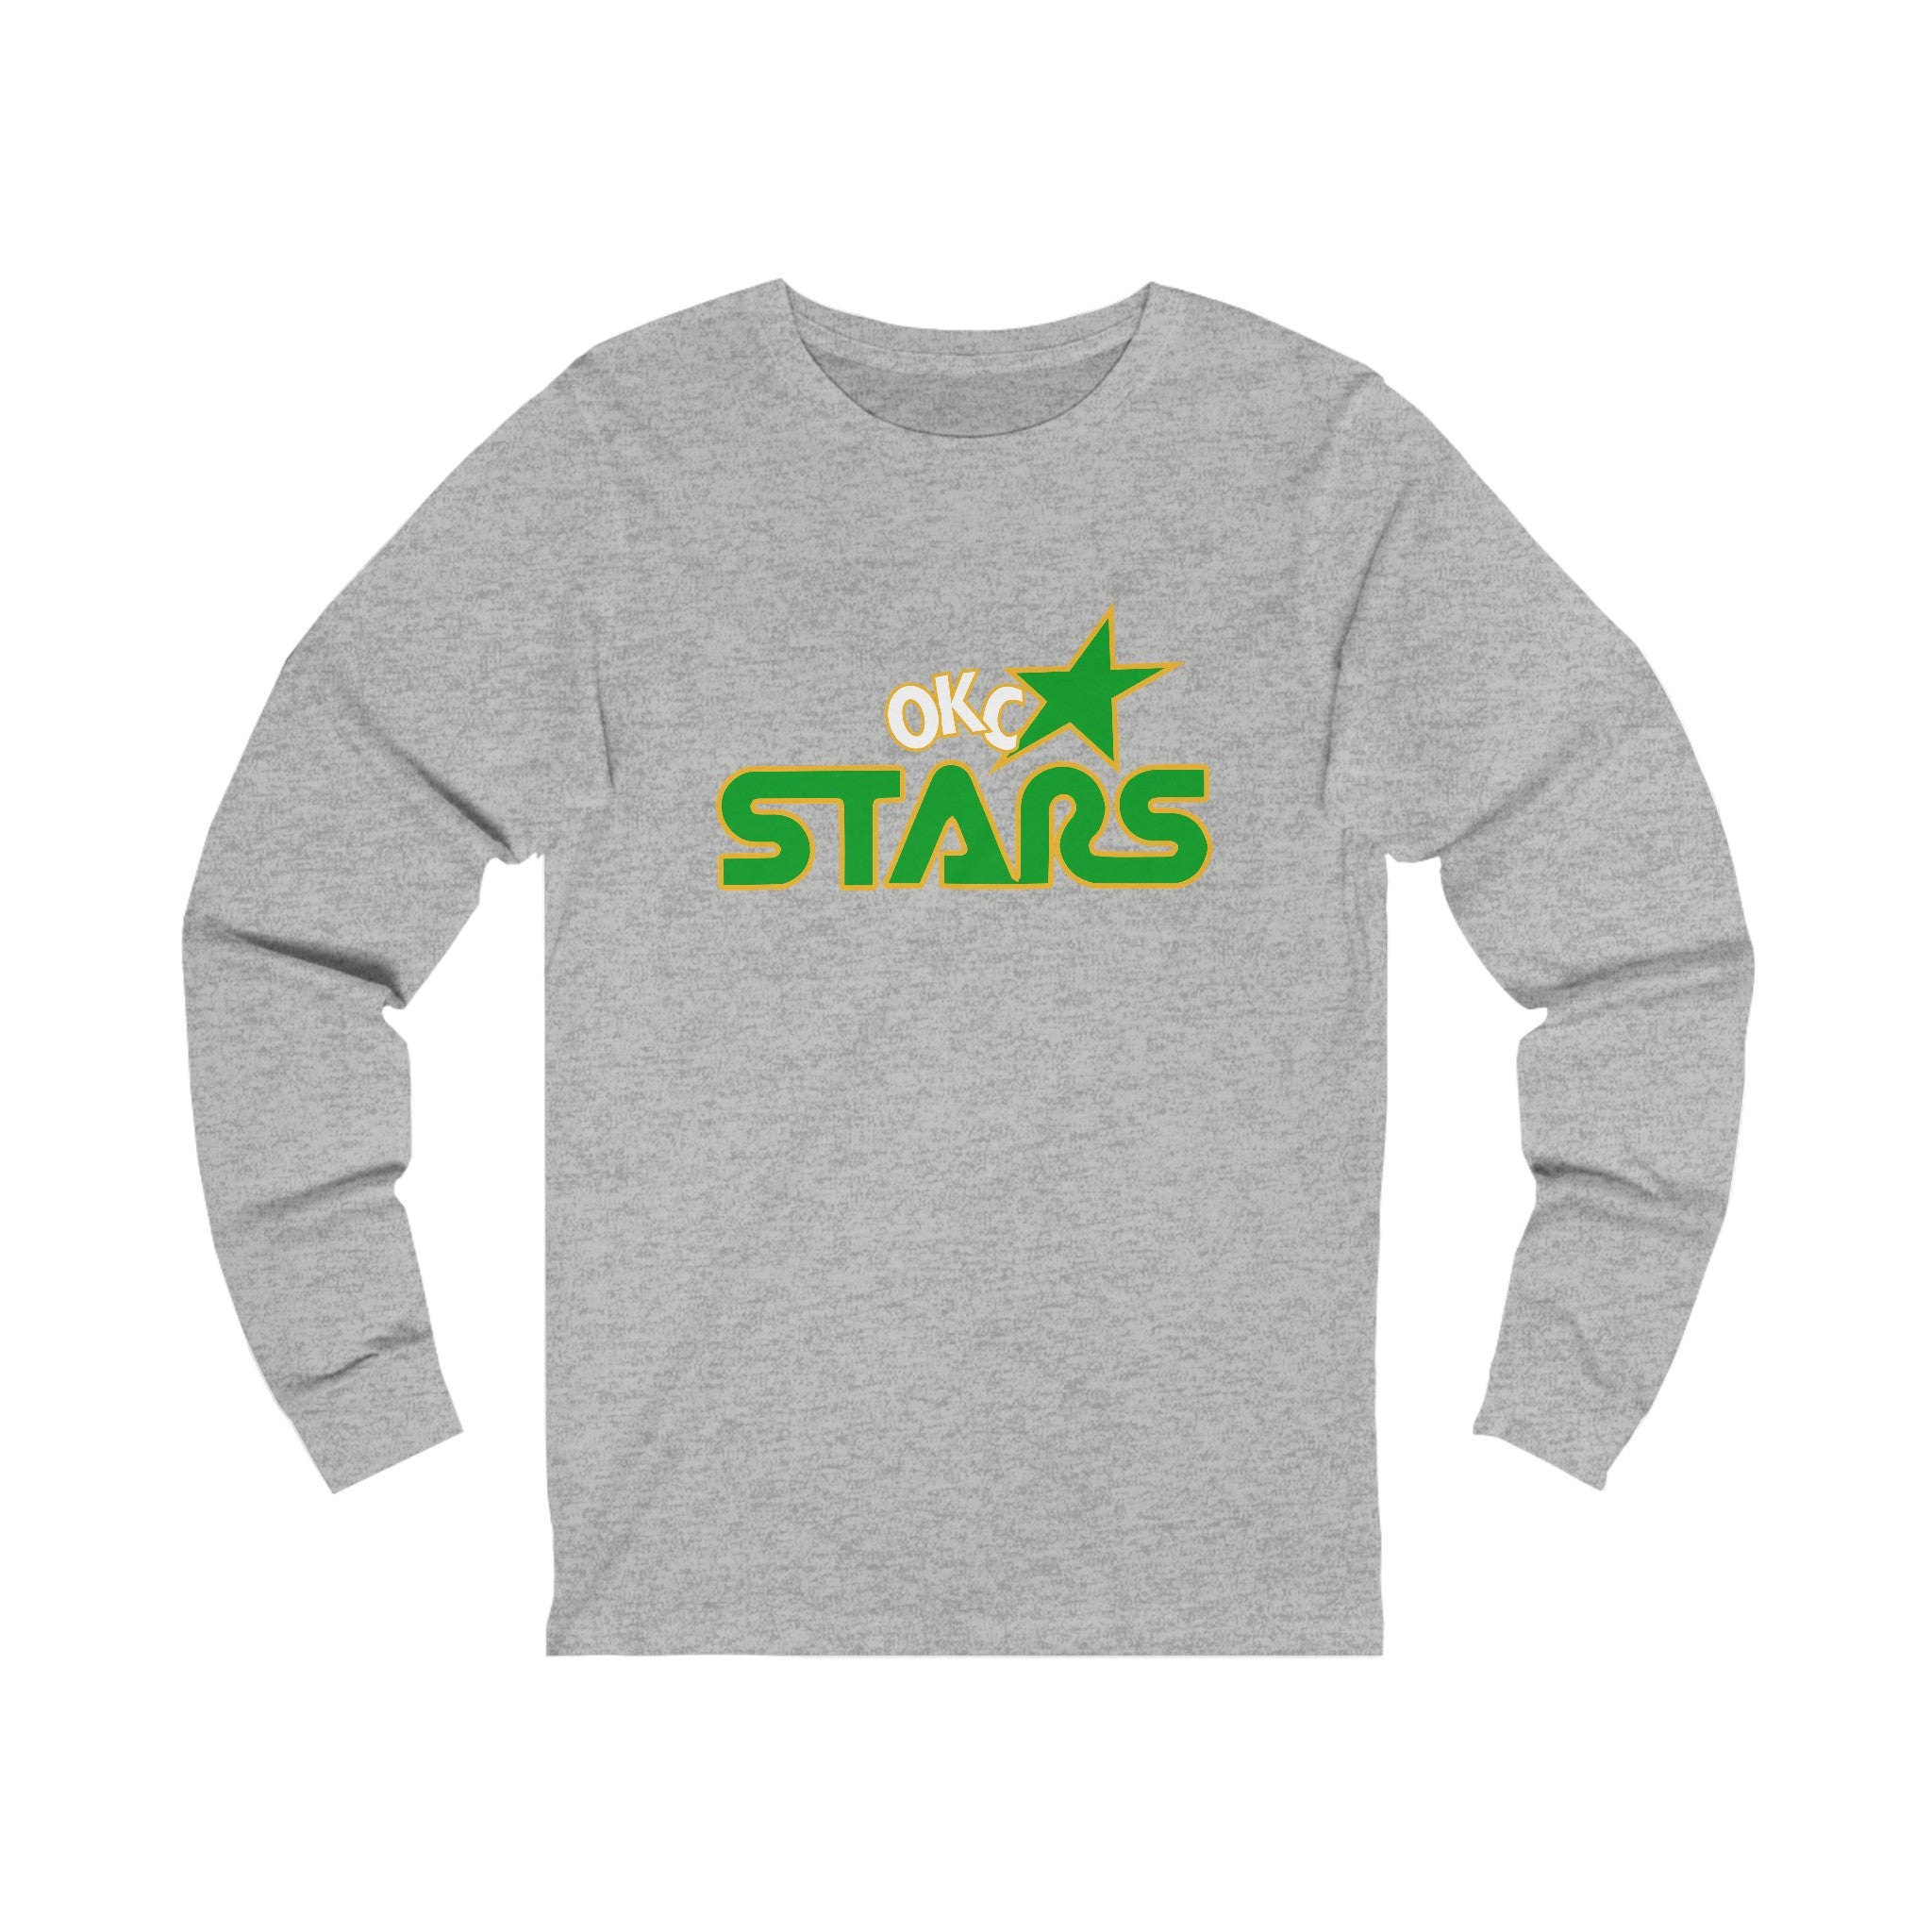 Oklahoma City Stars Long Sleeve Shirt